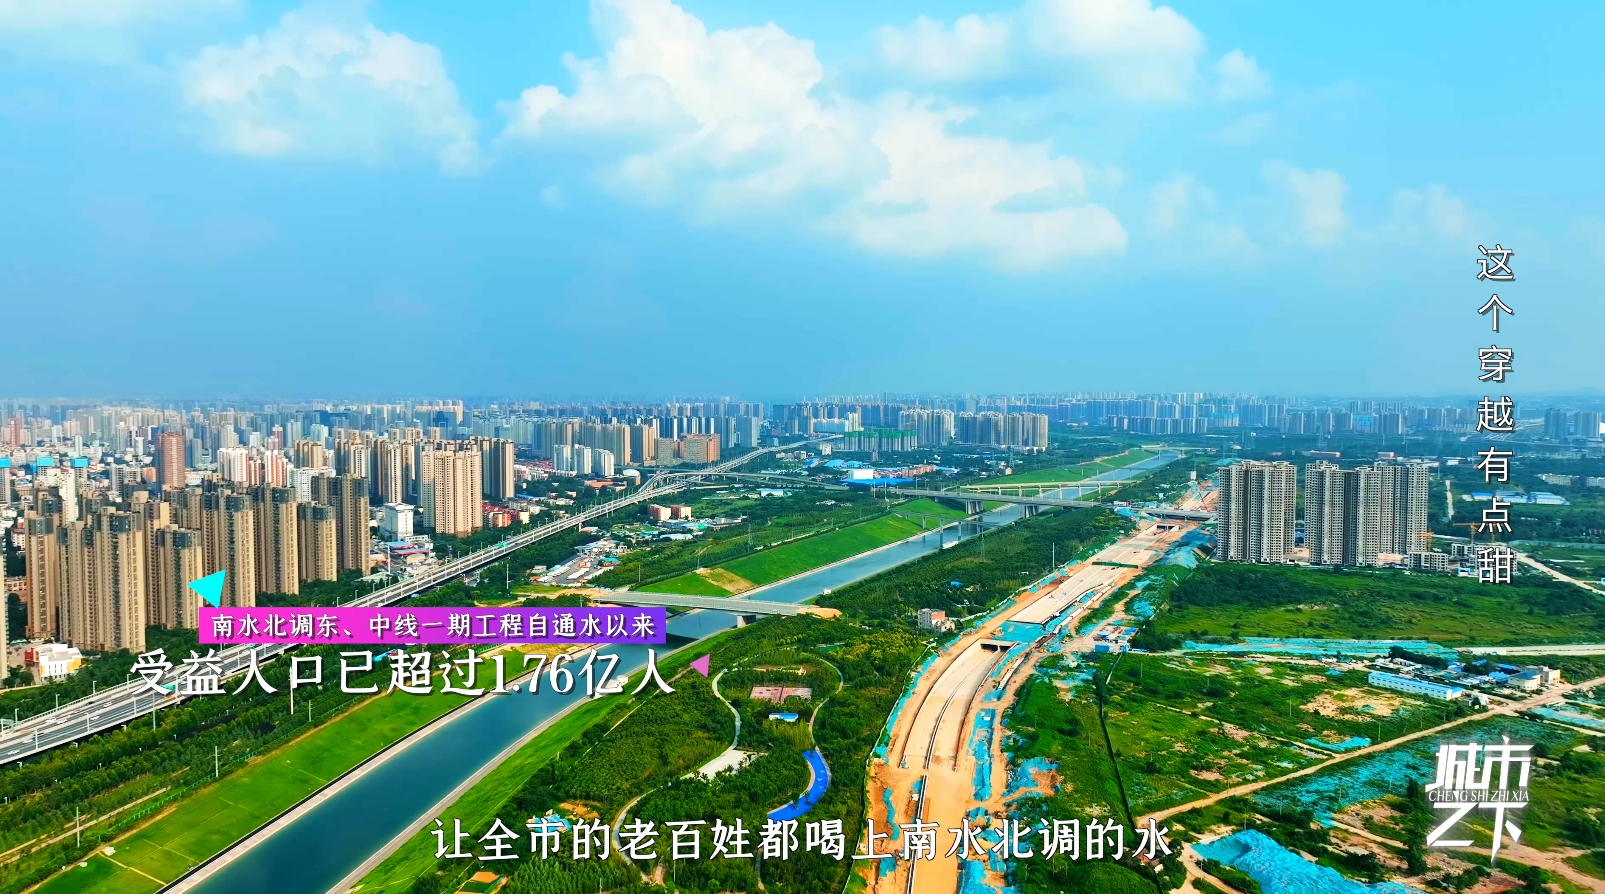 系列纪录片《城市之下》带你从下往上看河南郑州的生长速度